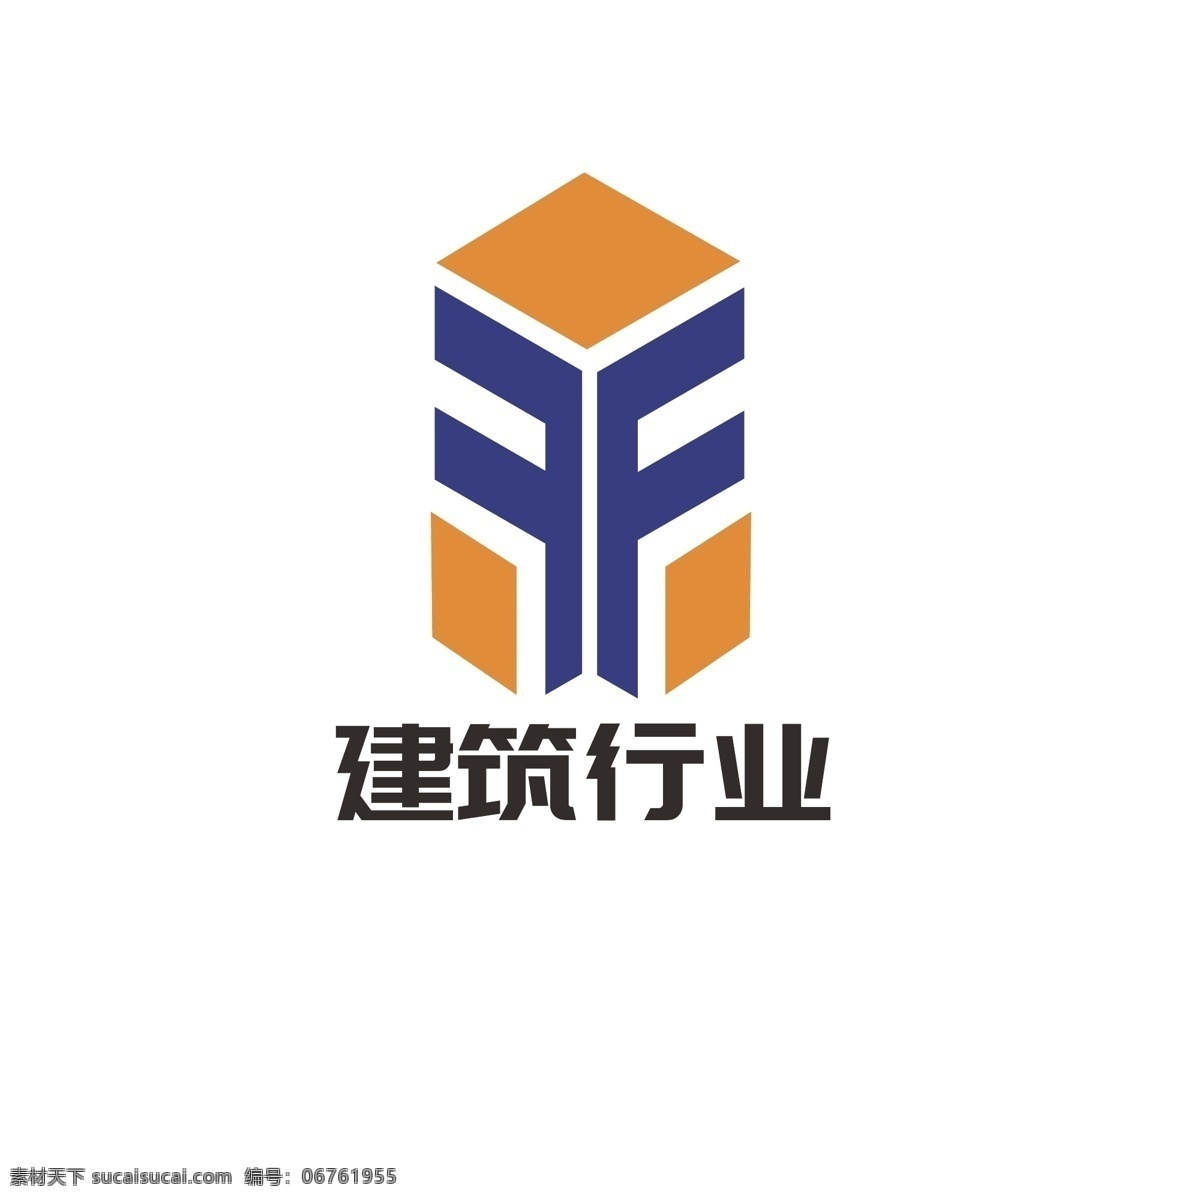 建筑 行业 logo 高楼 大厦 简约 科技 字母f 发展 矗立